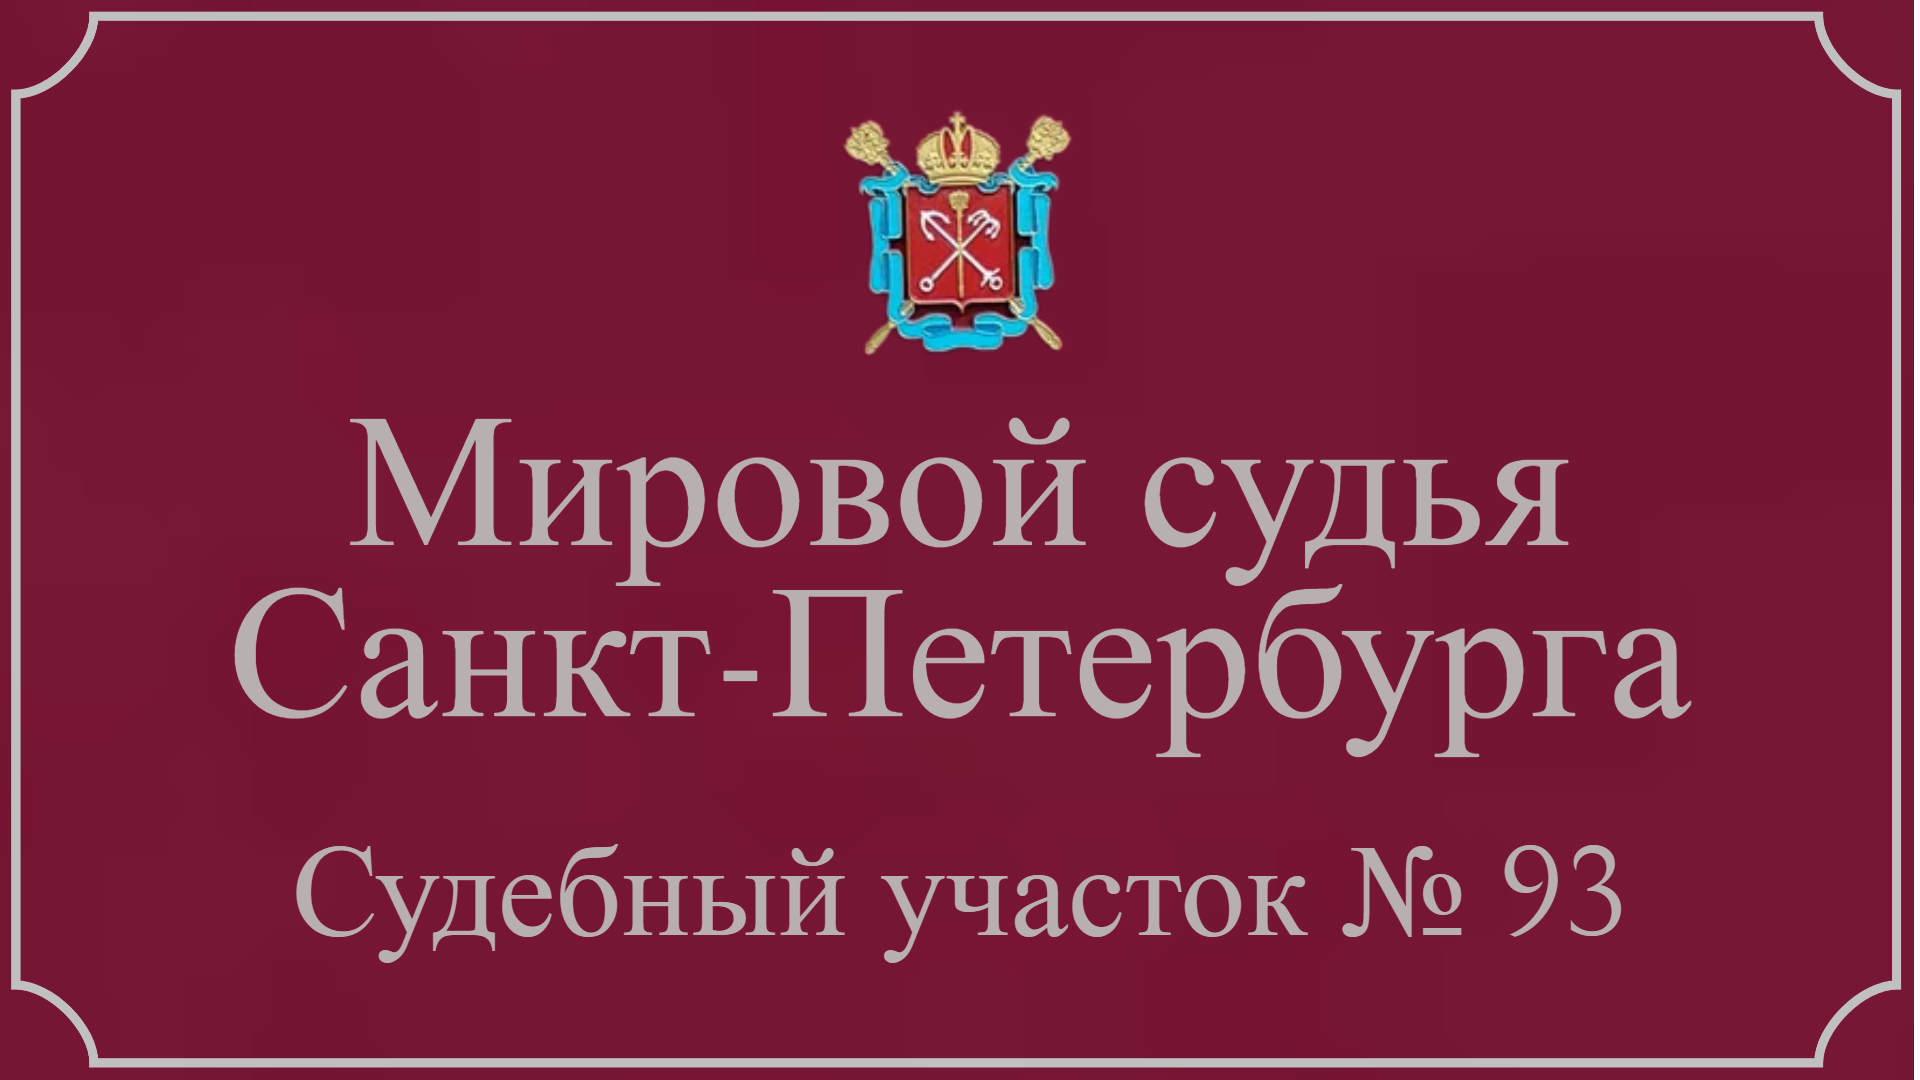 Информация по 93 судебному участку в Санкт-Петербурге.